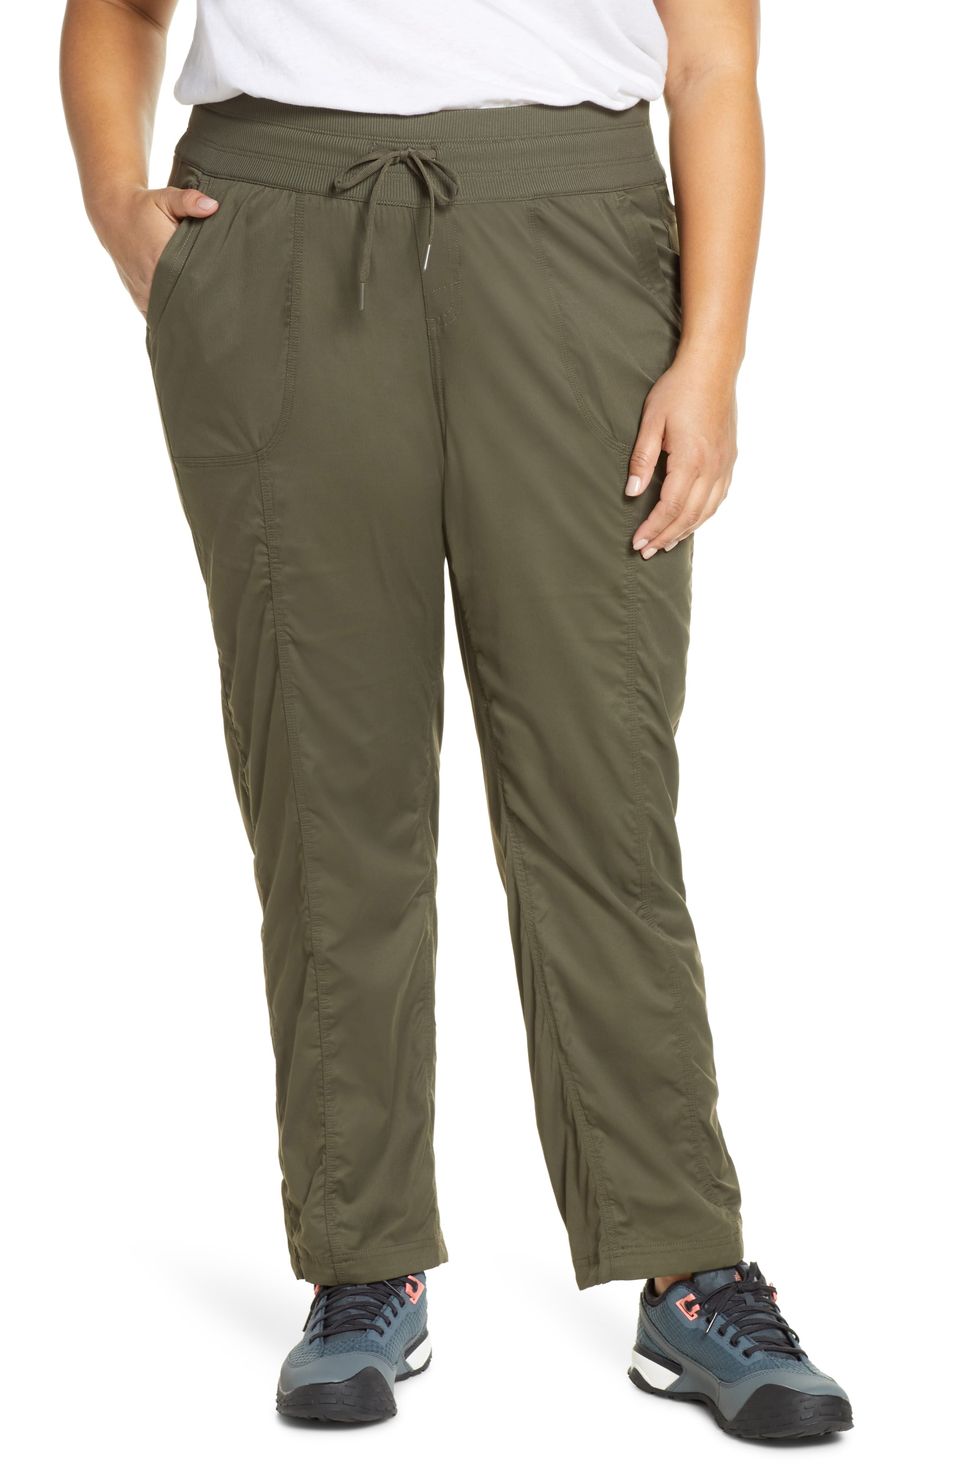 Baleaf Womens Hiking Cargo Capris Outdoor Lightweight Water Resistant Pants  Upf 50 Zipper Pockets Light Green Size Xxl